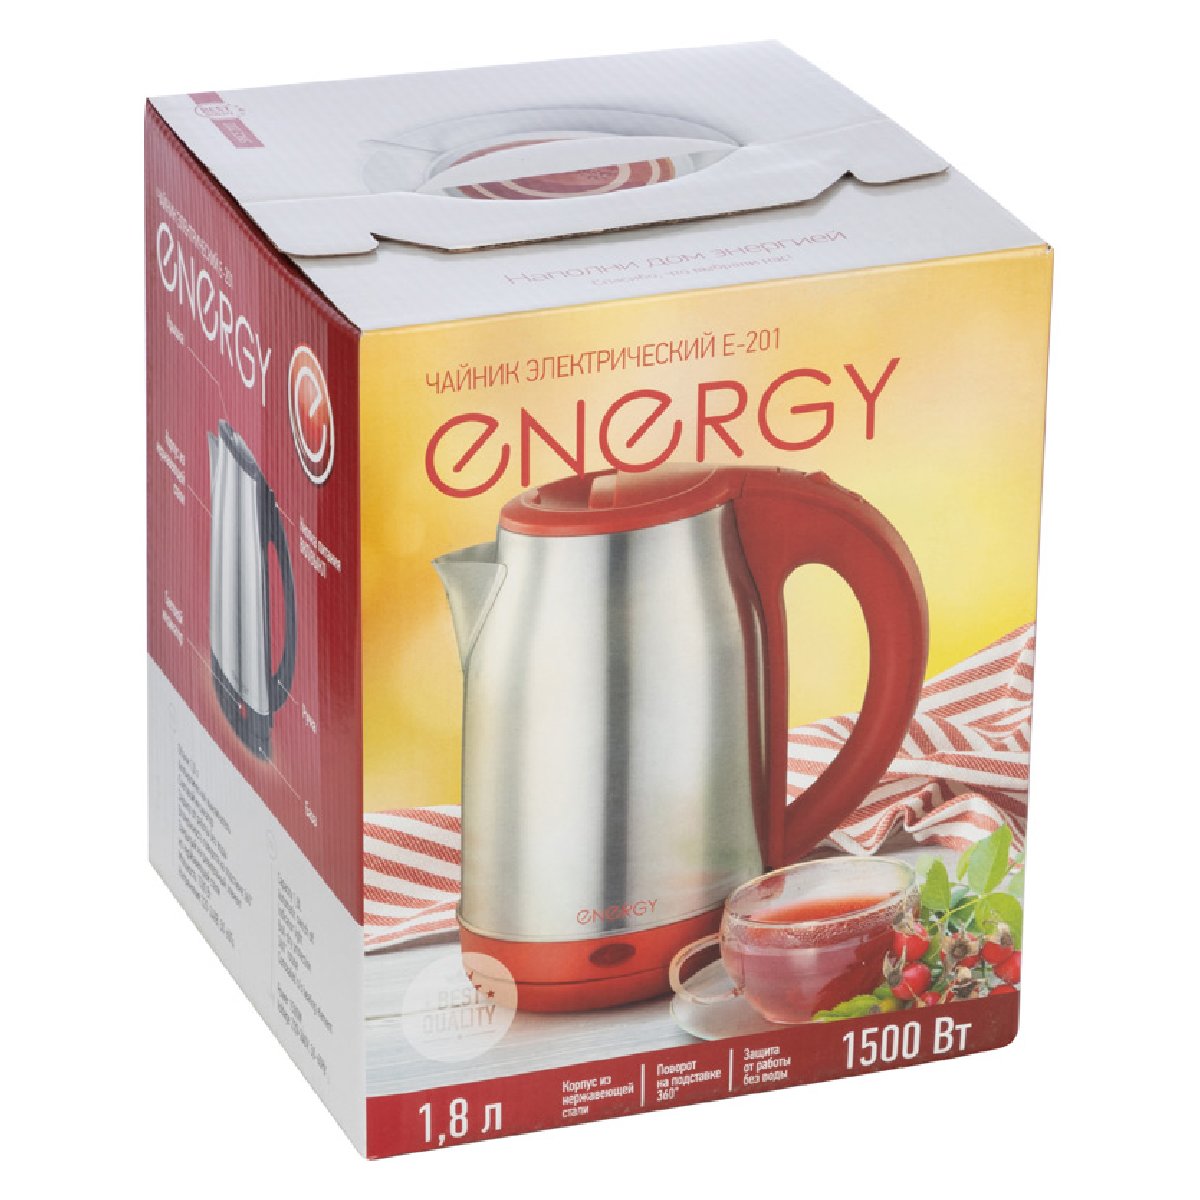 Чайник ENERGY E-201 (1,8 л, диск) стальной, красный (164125)